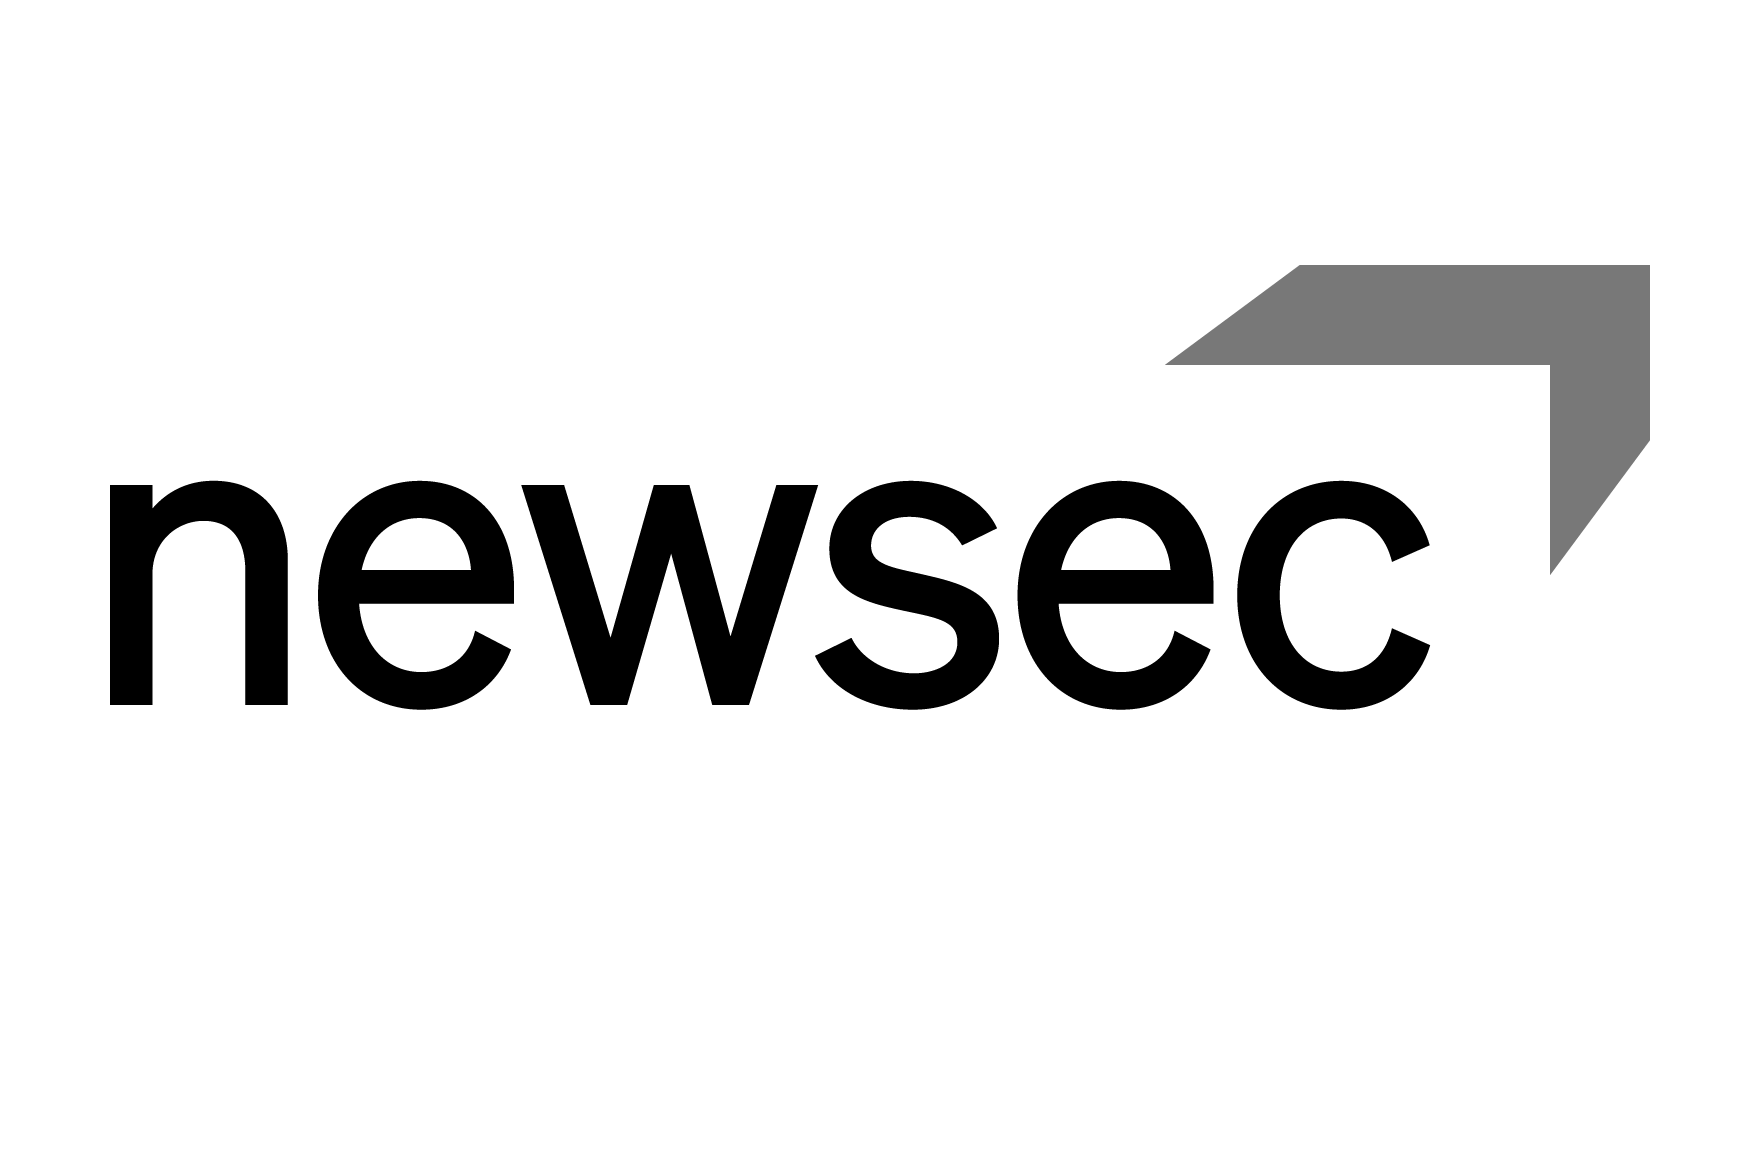 newsec monokrom logo.png